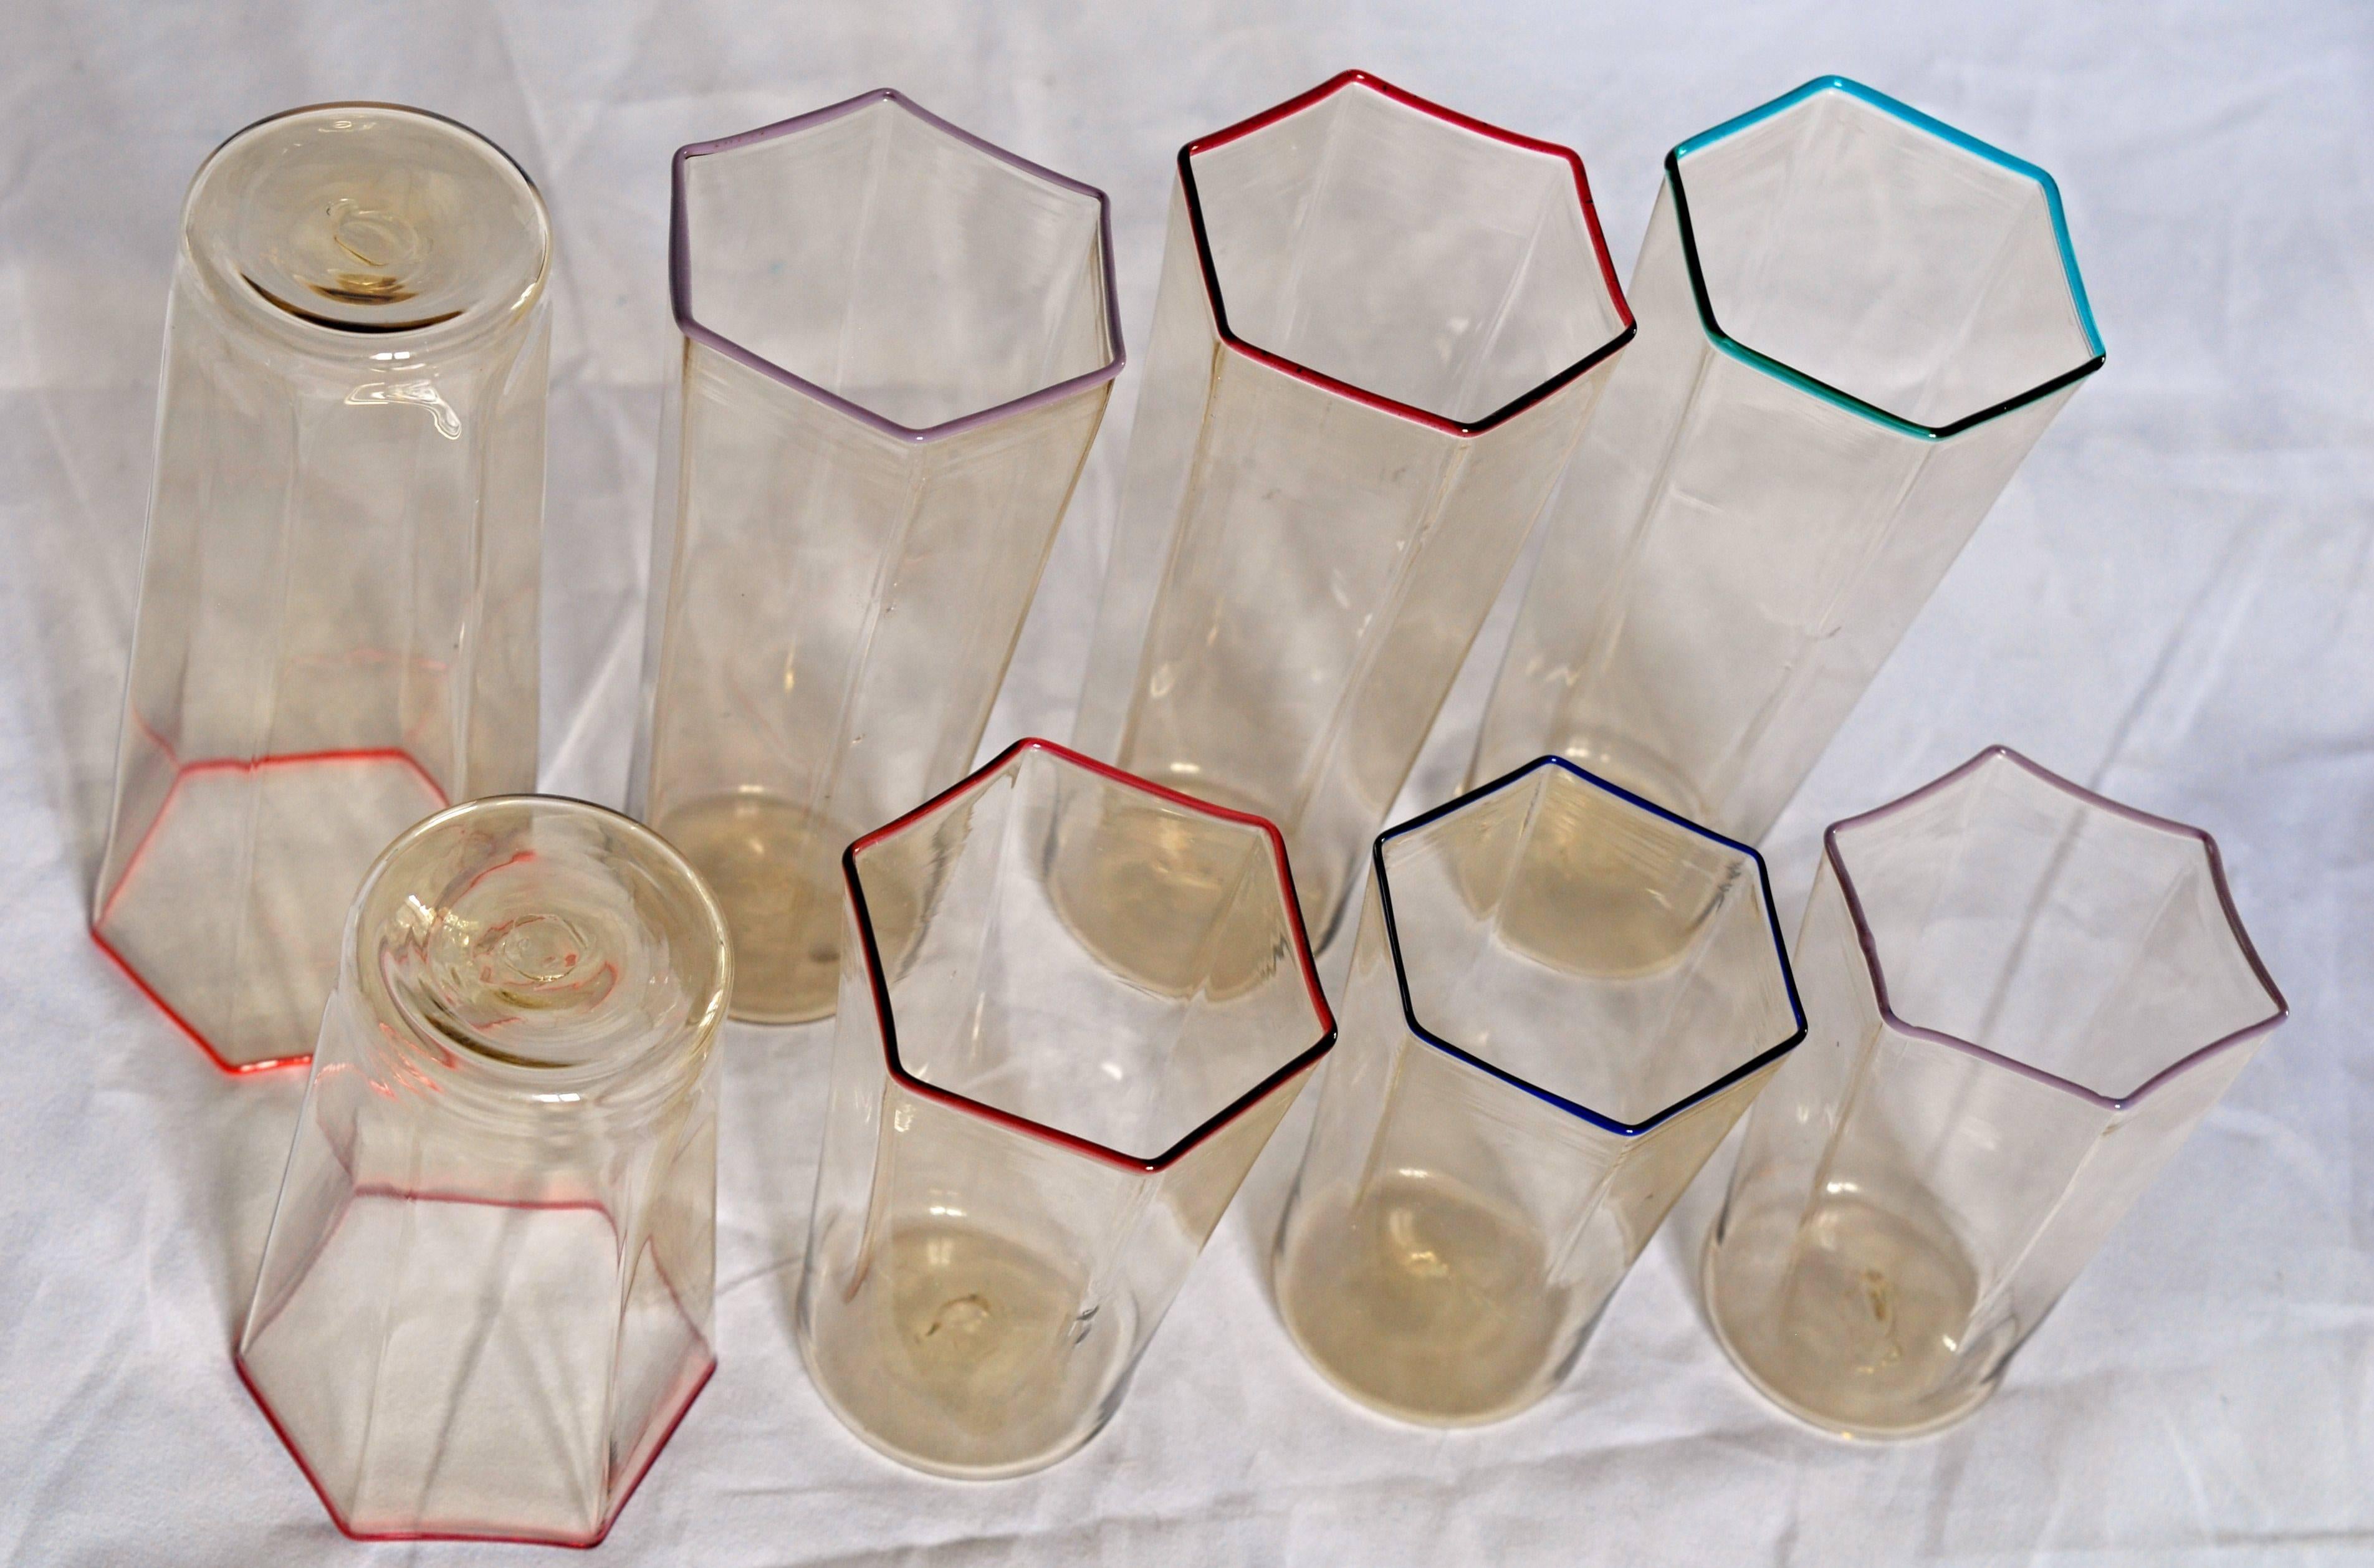 Late 20th Century Eight Hexagonal Pagliesco Glasses, Multicolored Rim, Carlo Scarpa 1932 Design